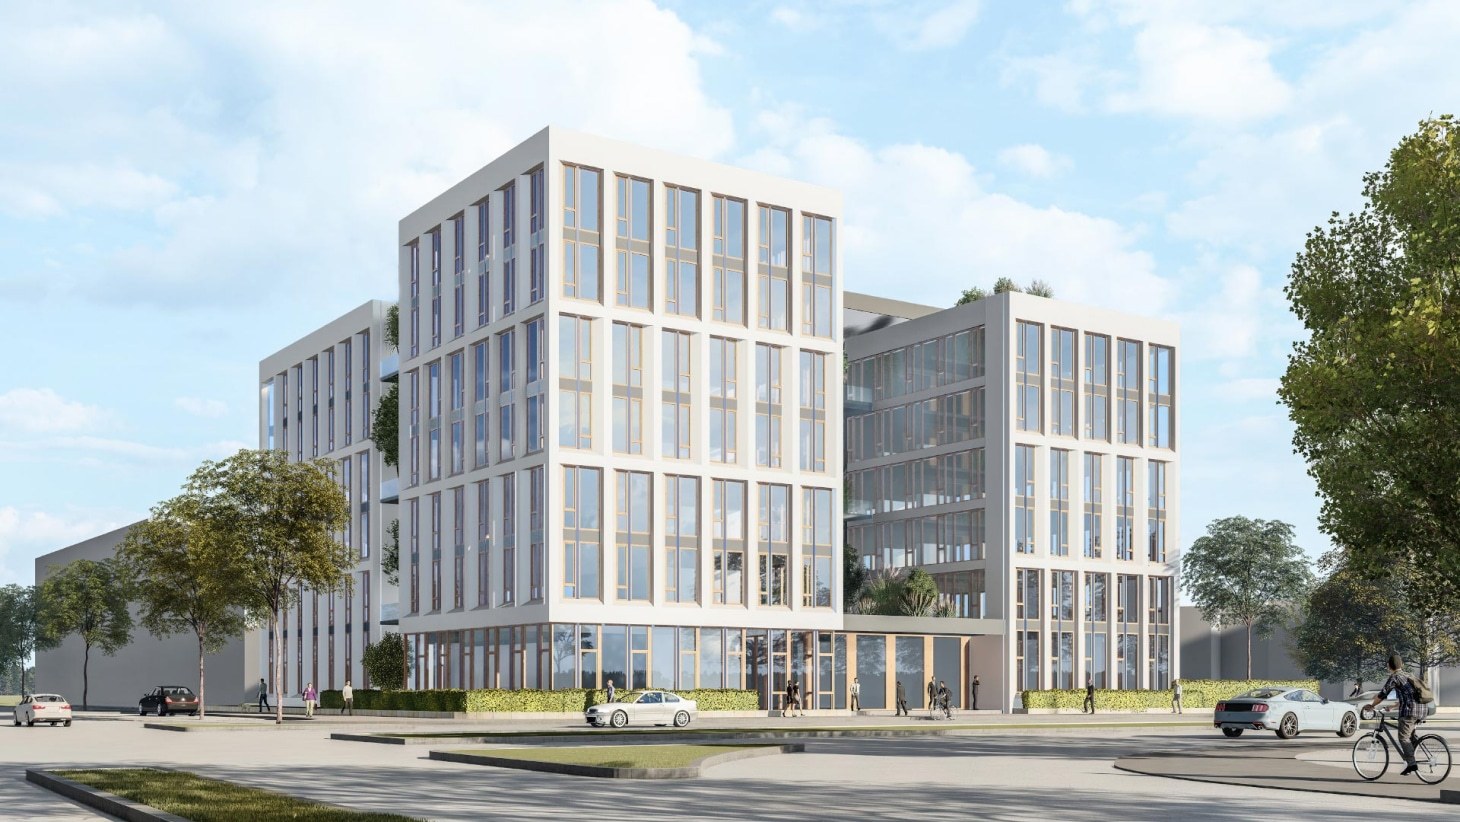 Neubau eines Kontorhauses am Großmarkt Karlsruhe: archis gewinnt den 1. Preis